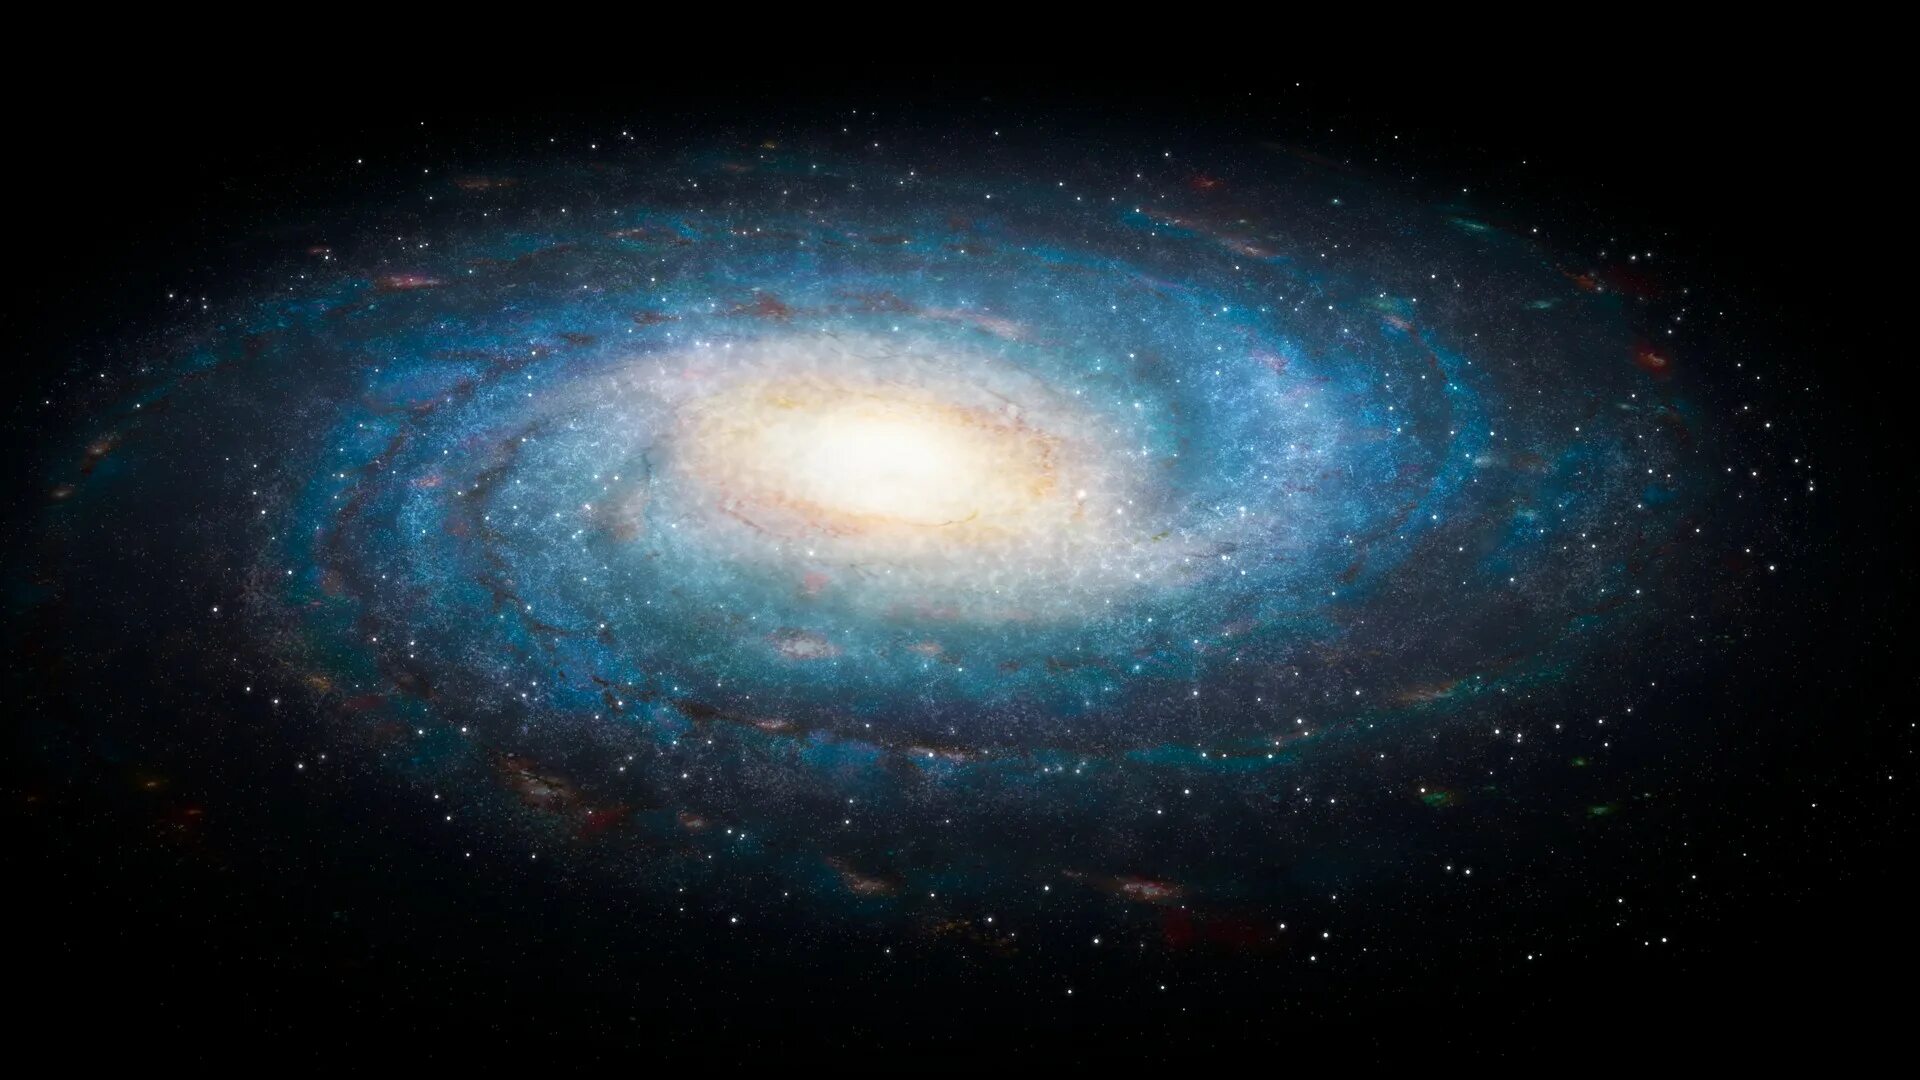 Наша Галактика Млечный путь. Галактика Млечный путь Солнечная система. Милки Вэй Галактика. Спиралевидная Галактика Млечный путь. Source space